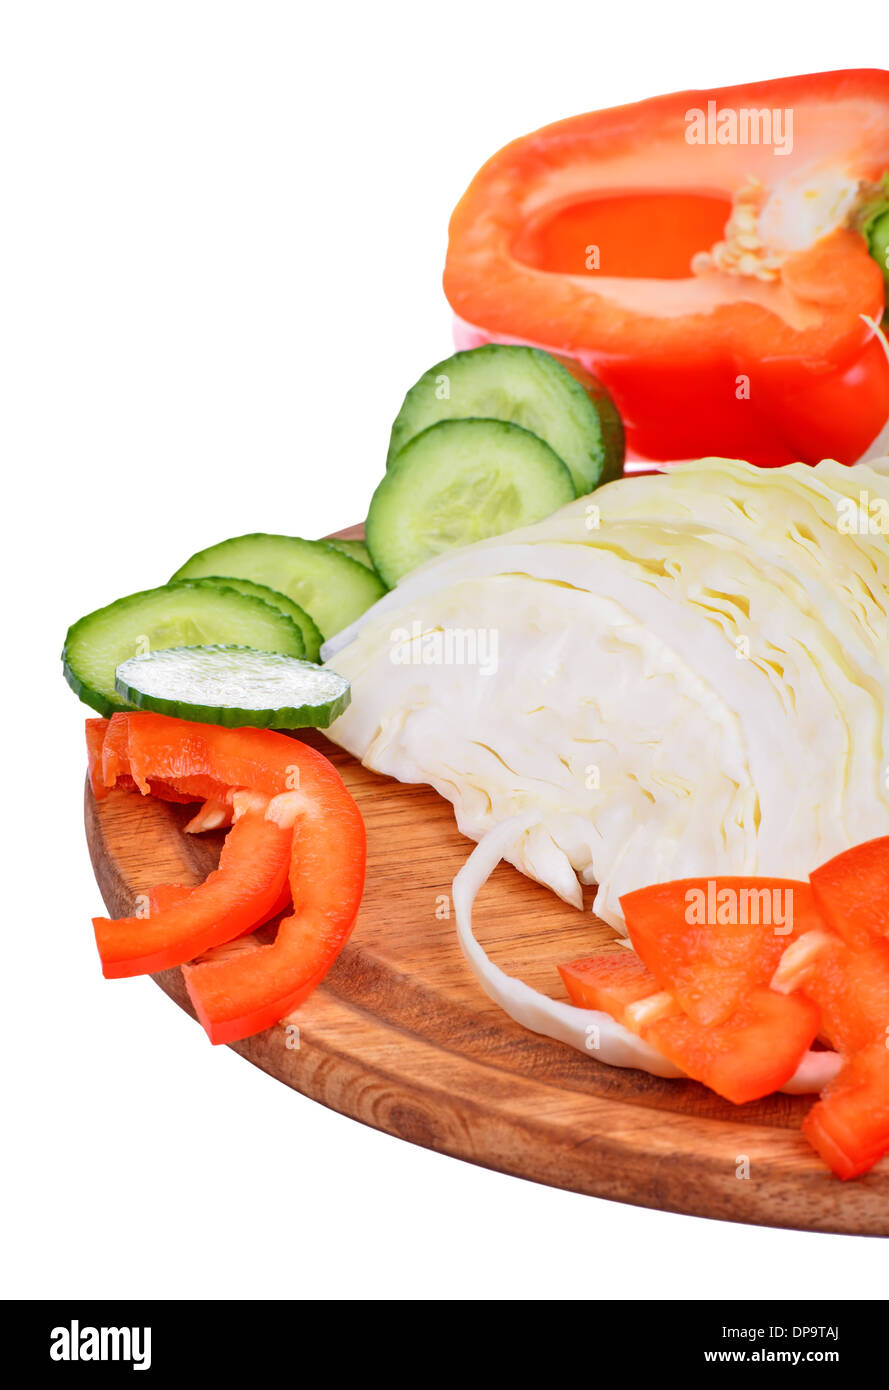 Un tazón de coleslaw con ensalada de repollo desmenuzado y pepinos, zanahorias, pimientos Foto de stock